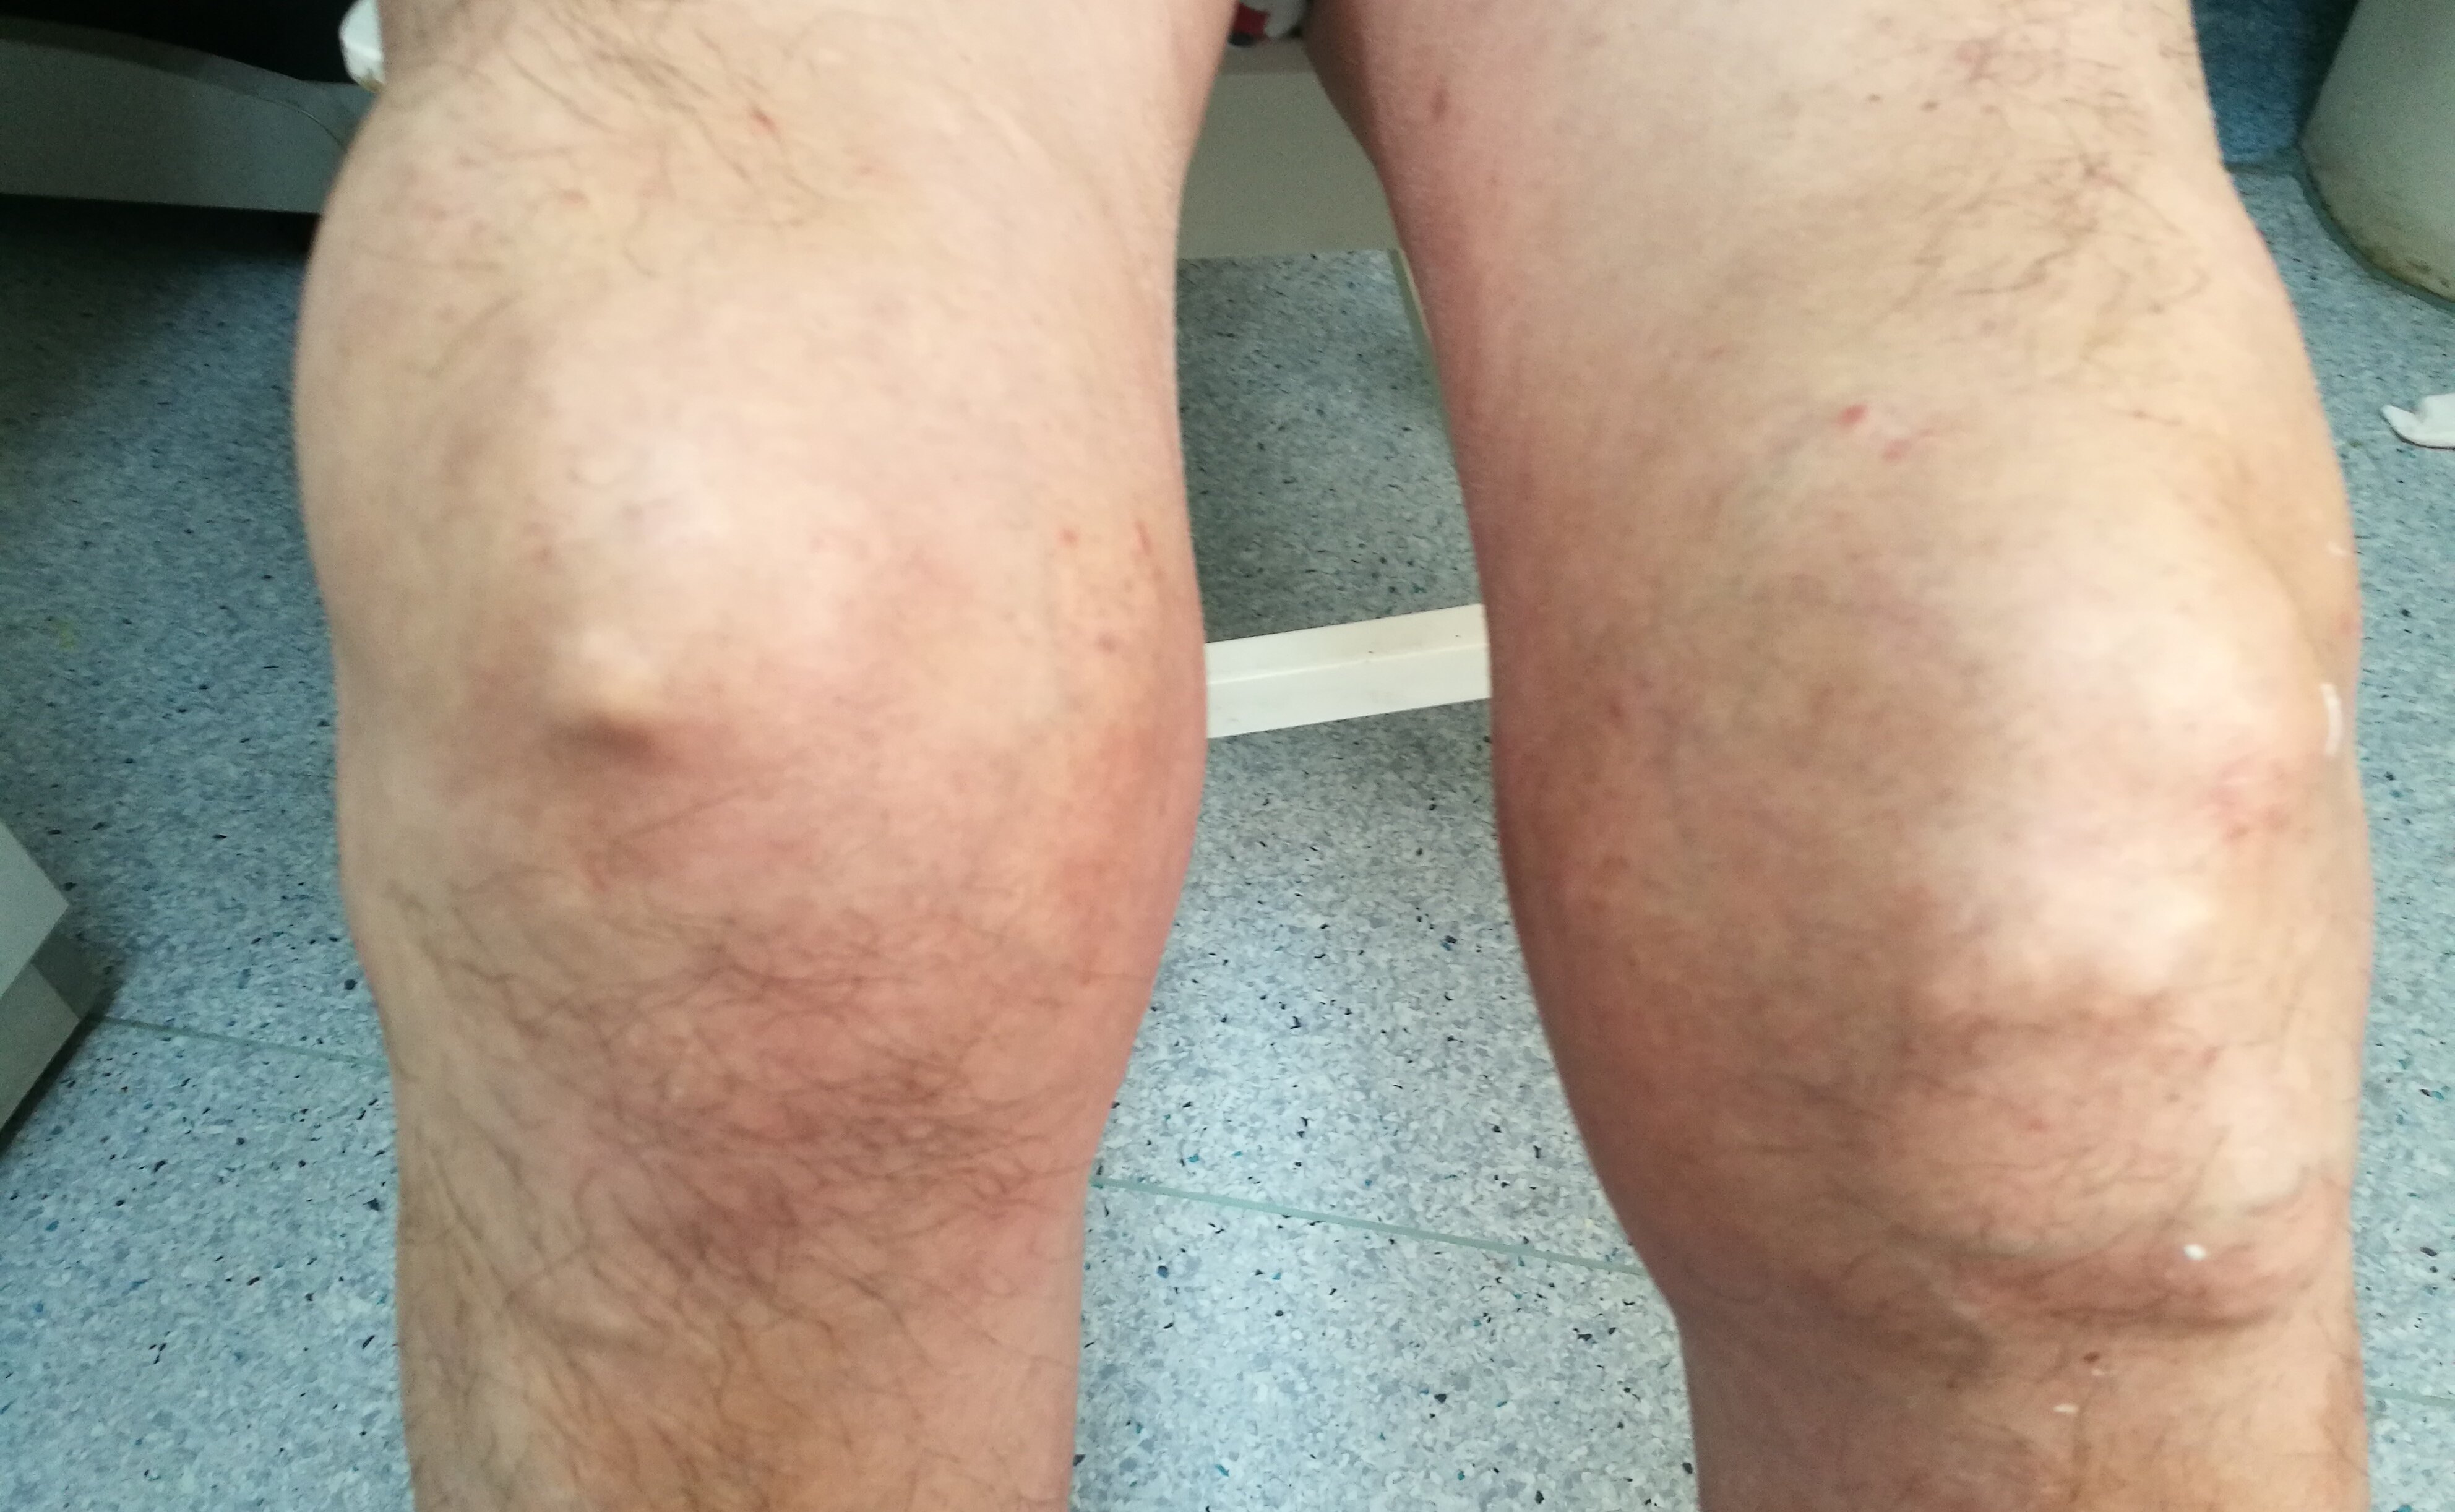 患者双膝关节已经变形,肉眼可见皮下明显的尿酸盐沉积形成的痛风石,膝